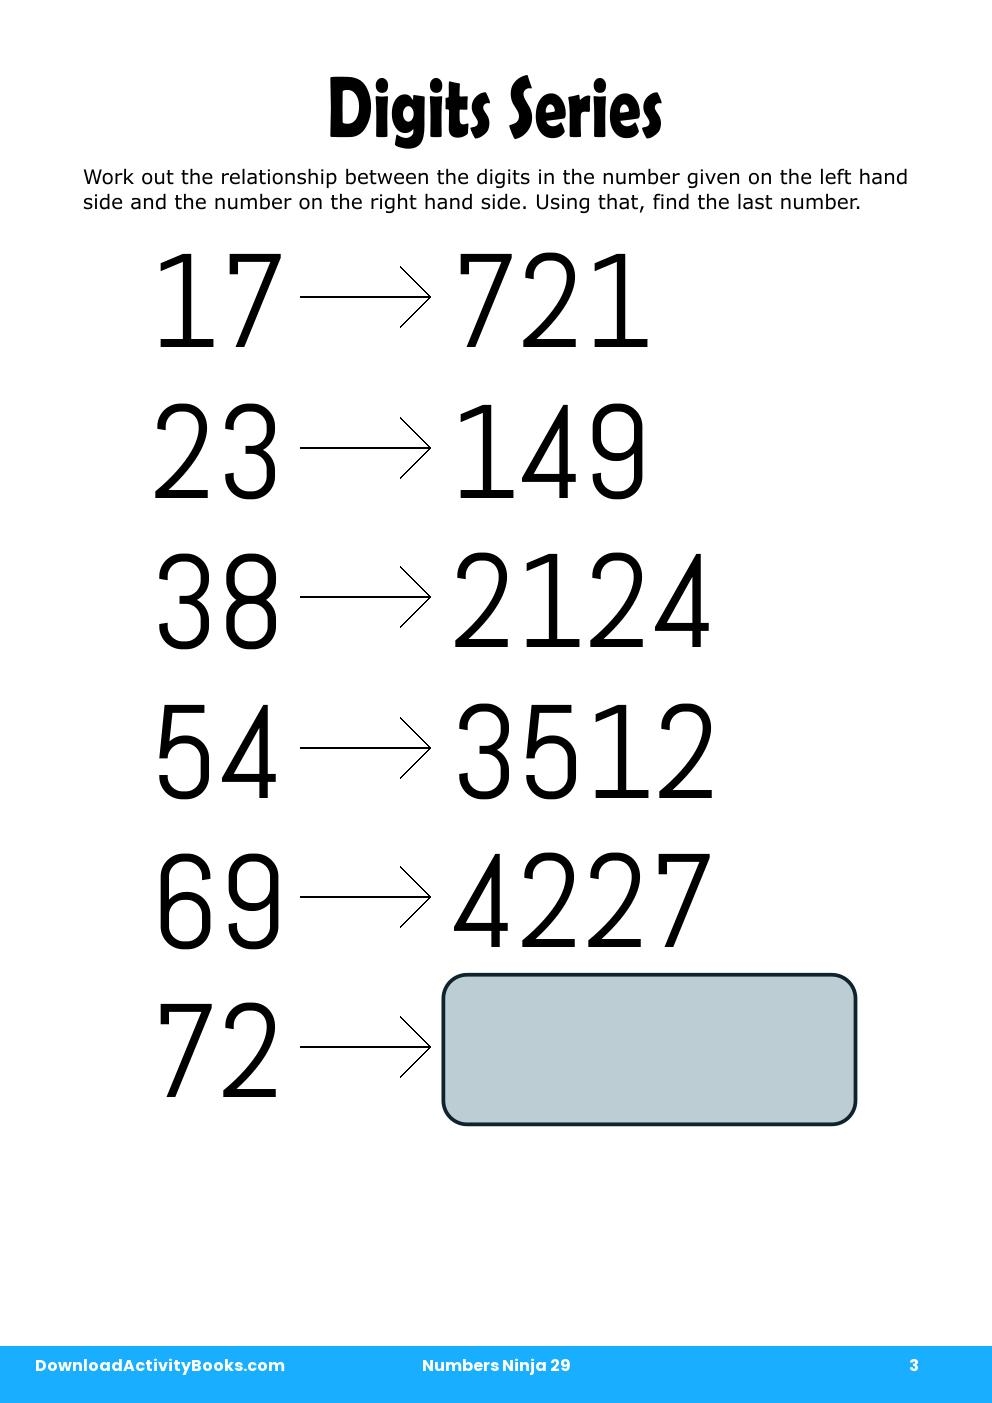 Digits Series in Numbers Ninja 29